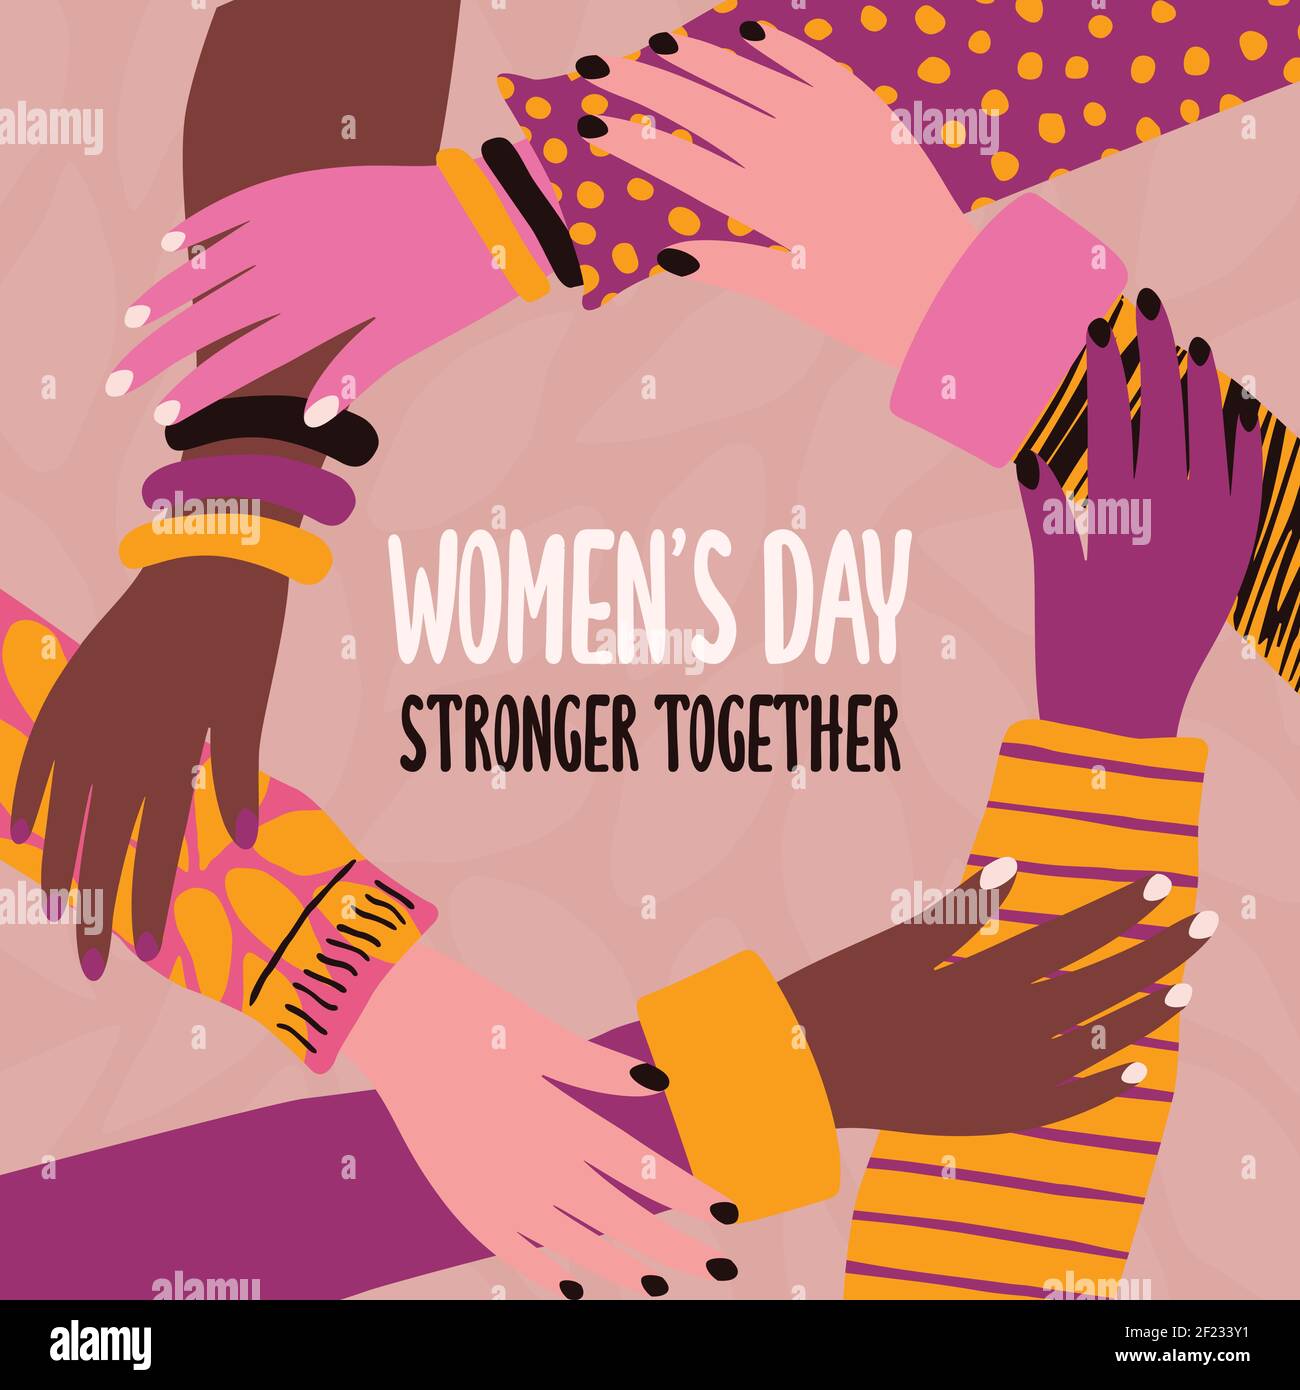 Internationale Frauen Grußkarte Illustration der verschiedenen Frauen Hände Kreis halten sich gegenseitig. Stronger Together Text Zitat für Frauenrechte Veranstaltung Stock Vektor